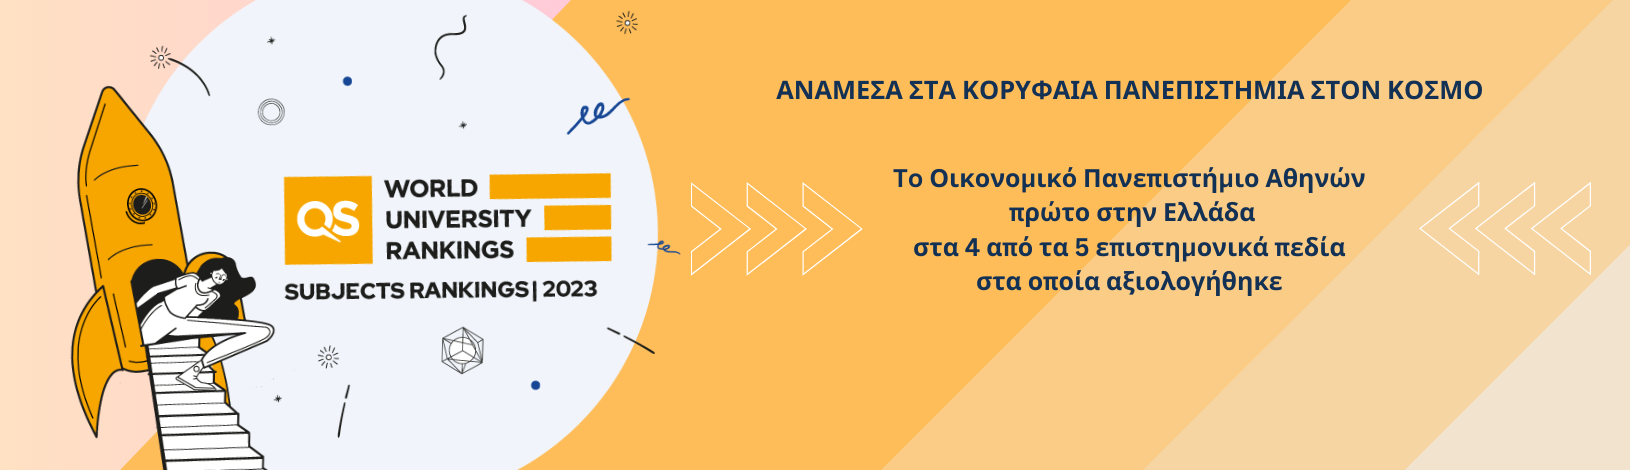 Νέα διεθνής αναγνώριση του Οικονομικού Πανεπιστημίου Αθηνών για το 2023